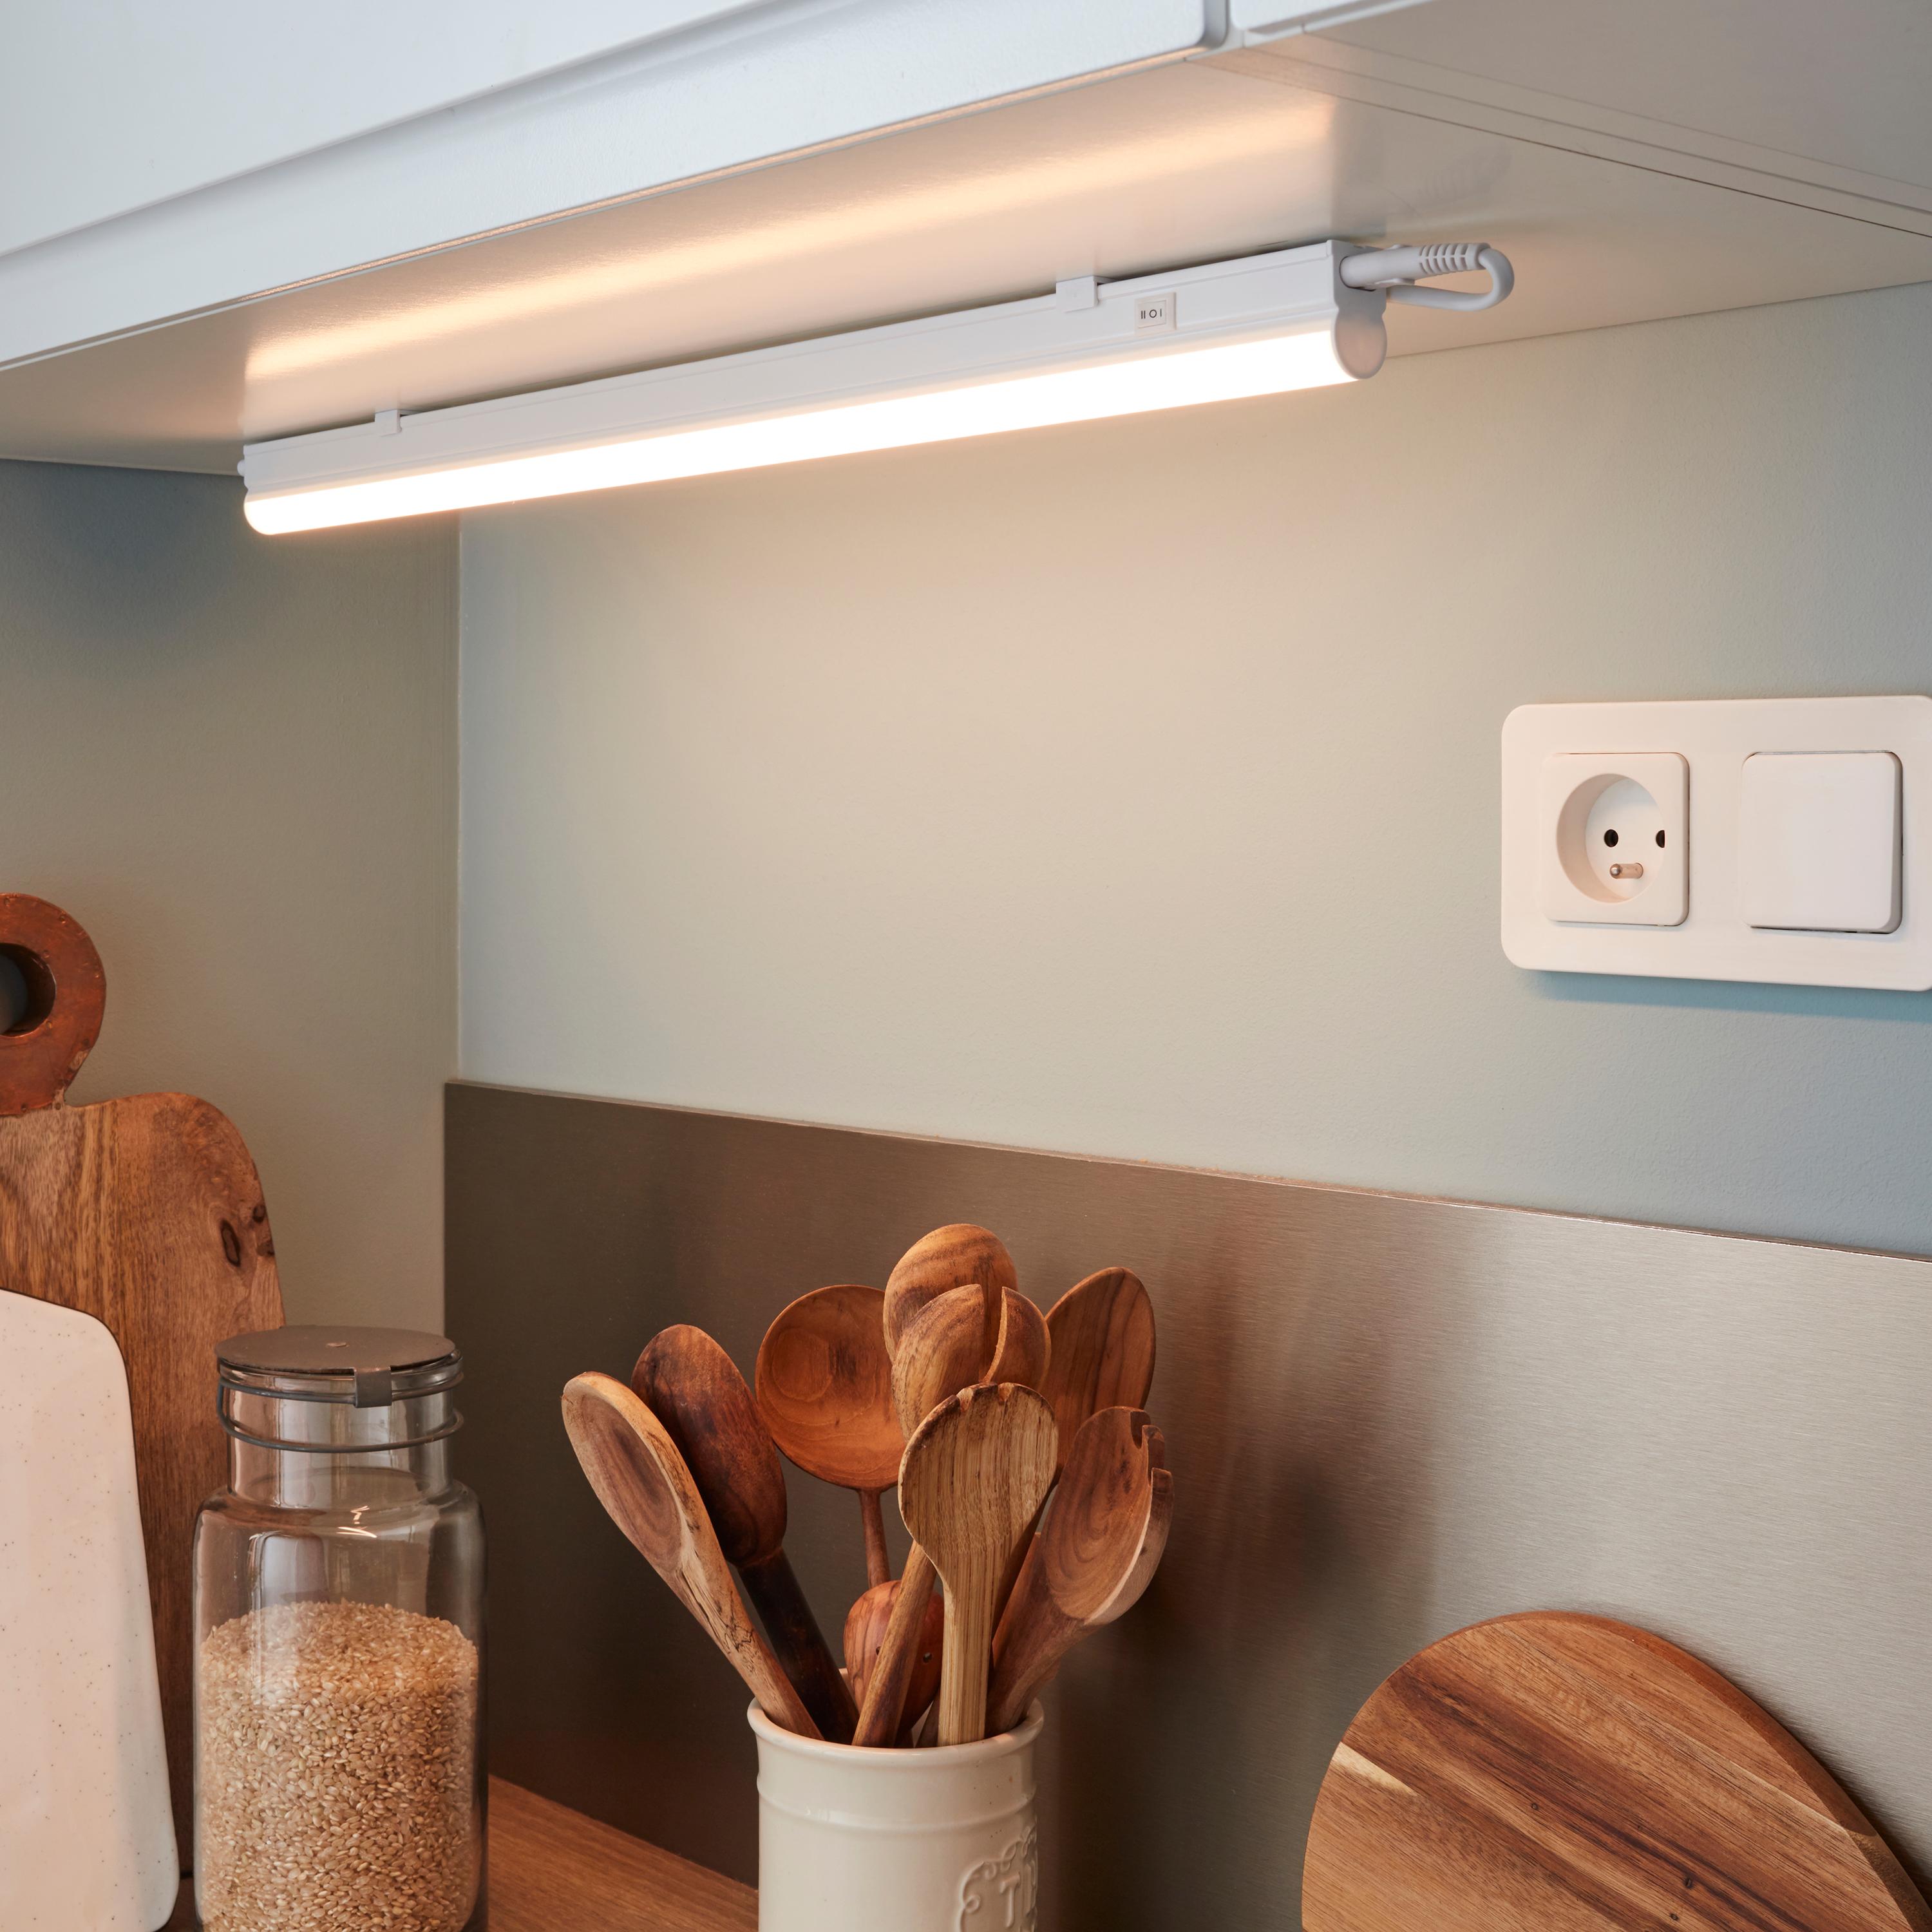 Réglette LED 230V 8W luminaire plafonnier sous meuble cuisine